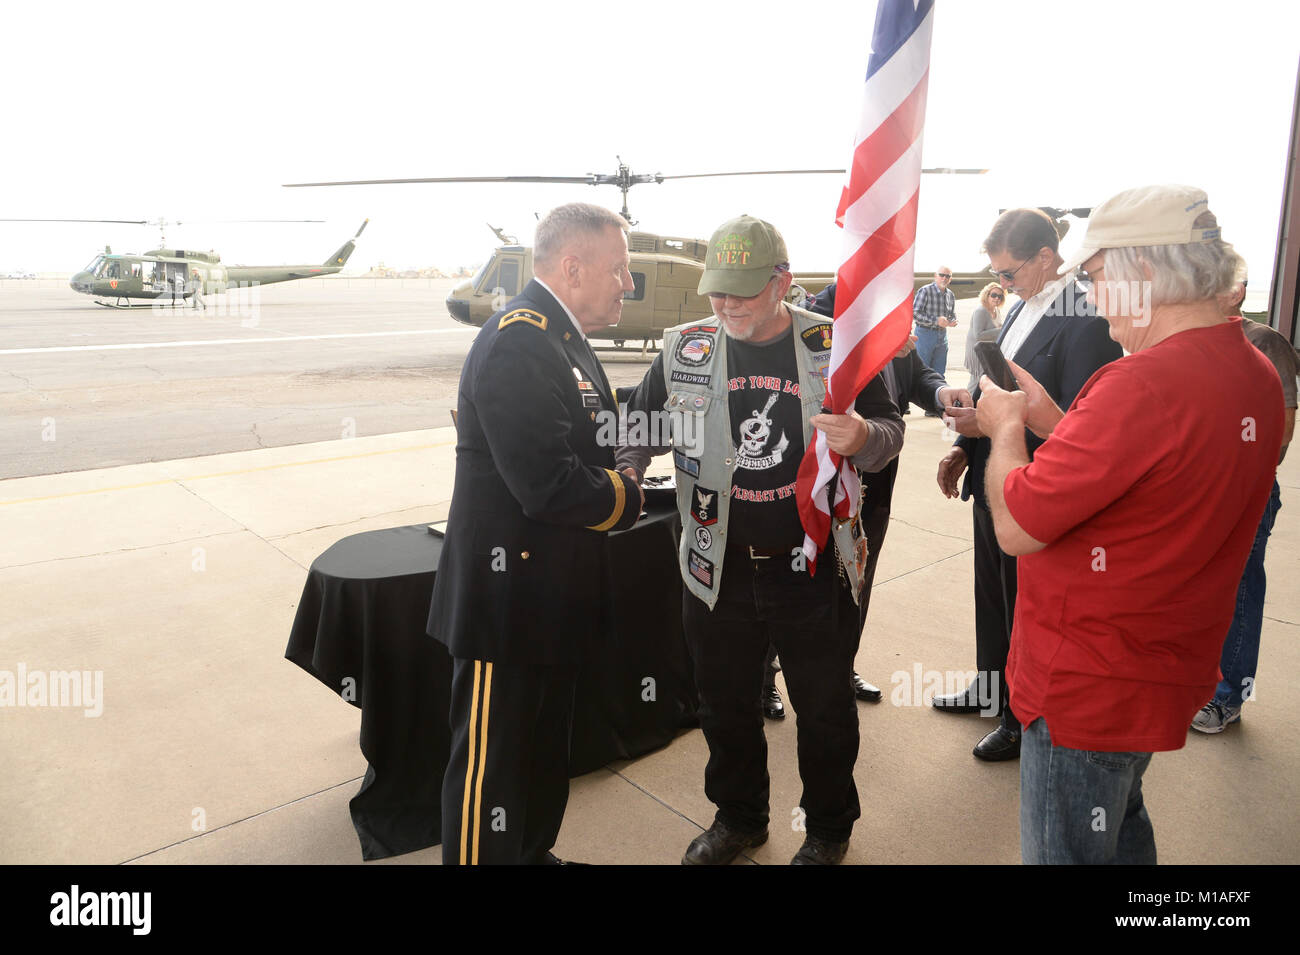 Veteran's wurden an der Veteran's Day Einhaltung 2016 Mather Field, Kalifornien geehrt. Die Zuschauer sahen zu, wie eine große Gedenktafel zu Ehren Piloten, Besatzungsmitglieder, Wartungspersonal und medizinisches Personal, das während der Vietnam Krieg diente, geliefert wurde durch ein UH-1 Huey helicoptor. Veteran's waren auch mit einer speziellen PIN-recogonizing ihren Dienst an ihrem Land ausgezeichnet. Fotos von US Air Force Master Sgt. David J. Loeffler. Stockfoto